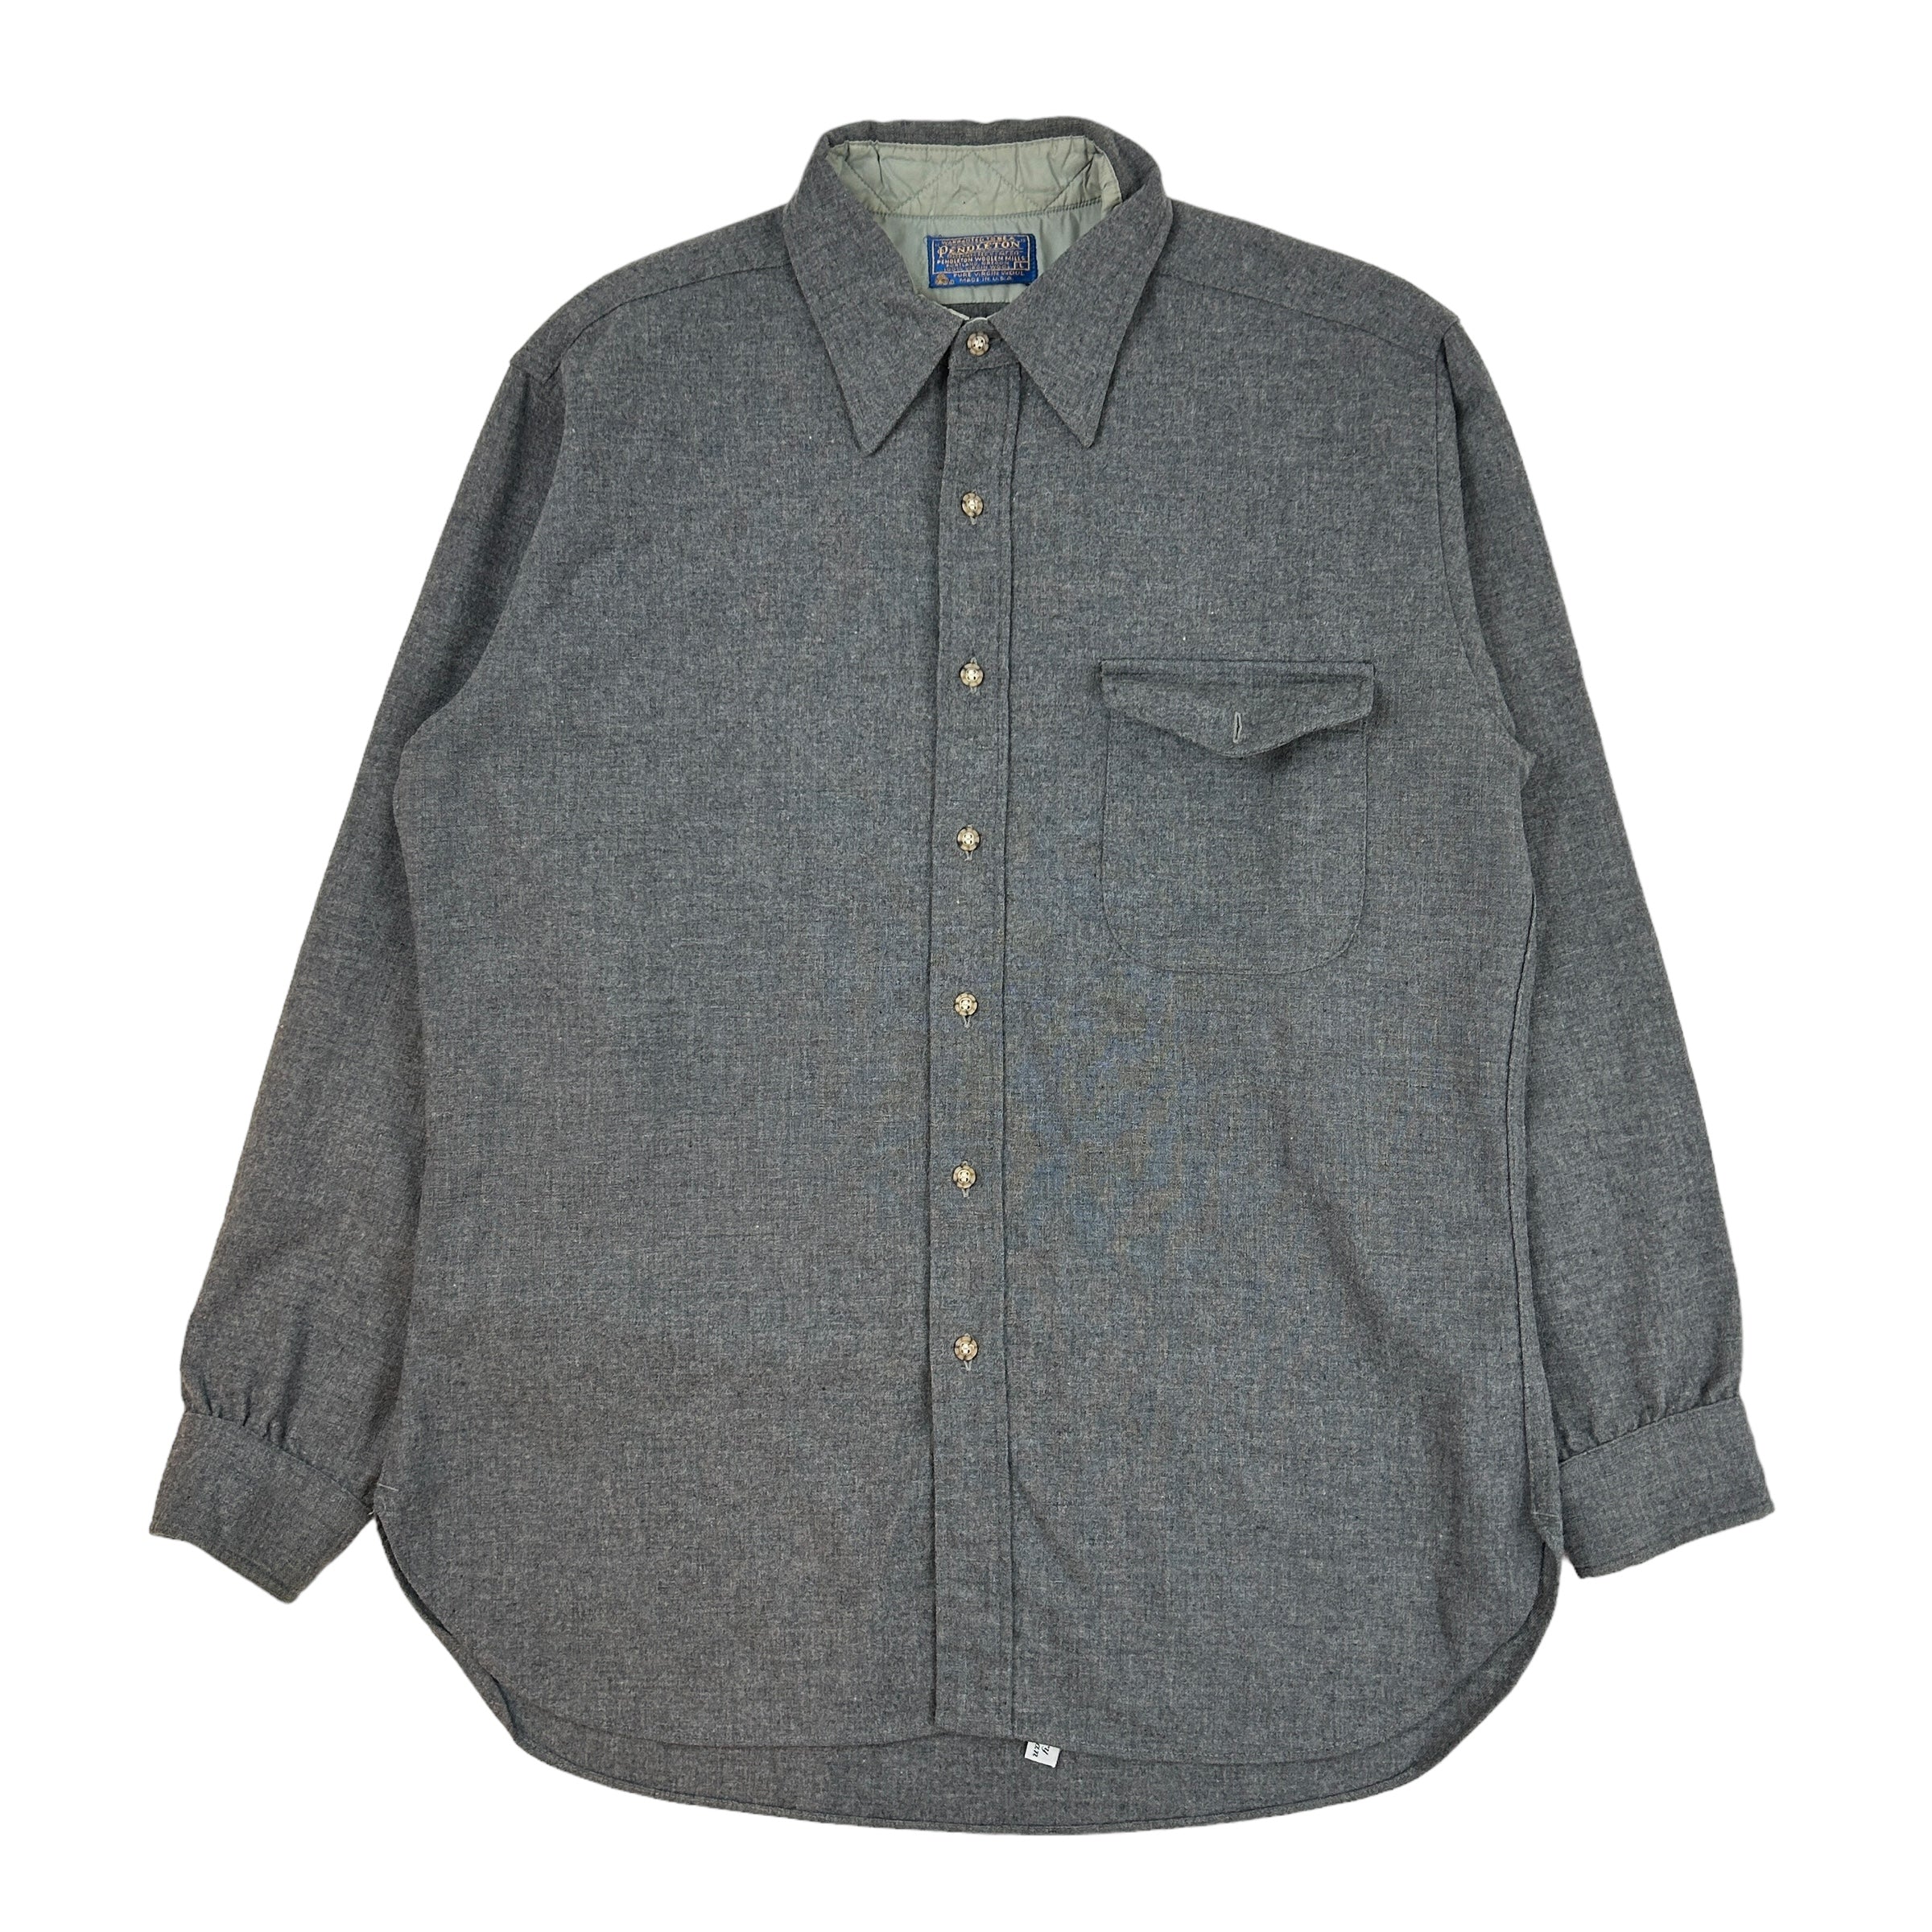 Vintage Pendleton Wool Button Up Grey